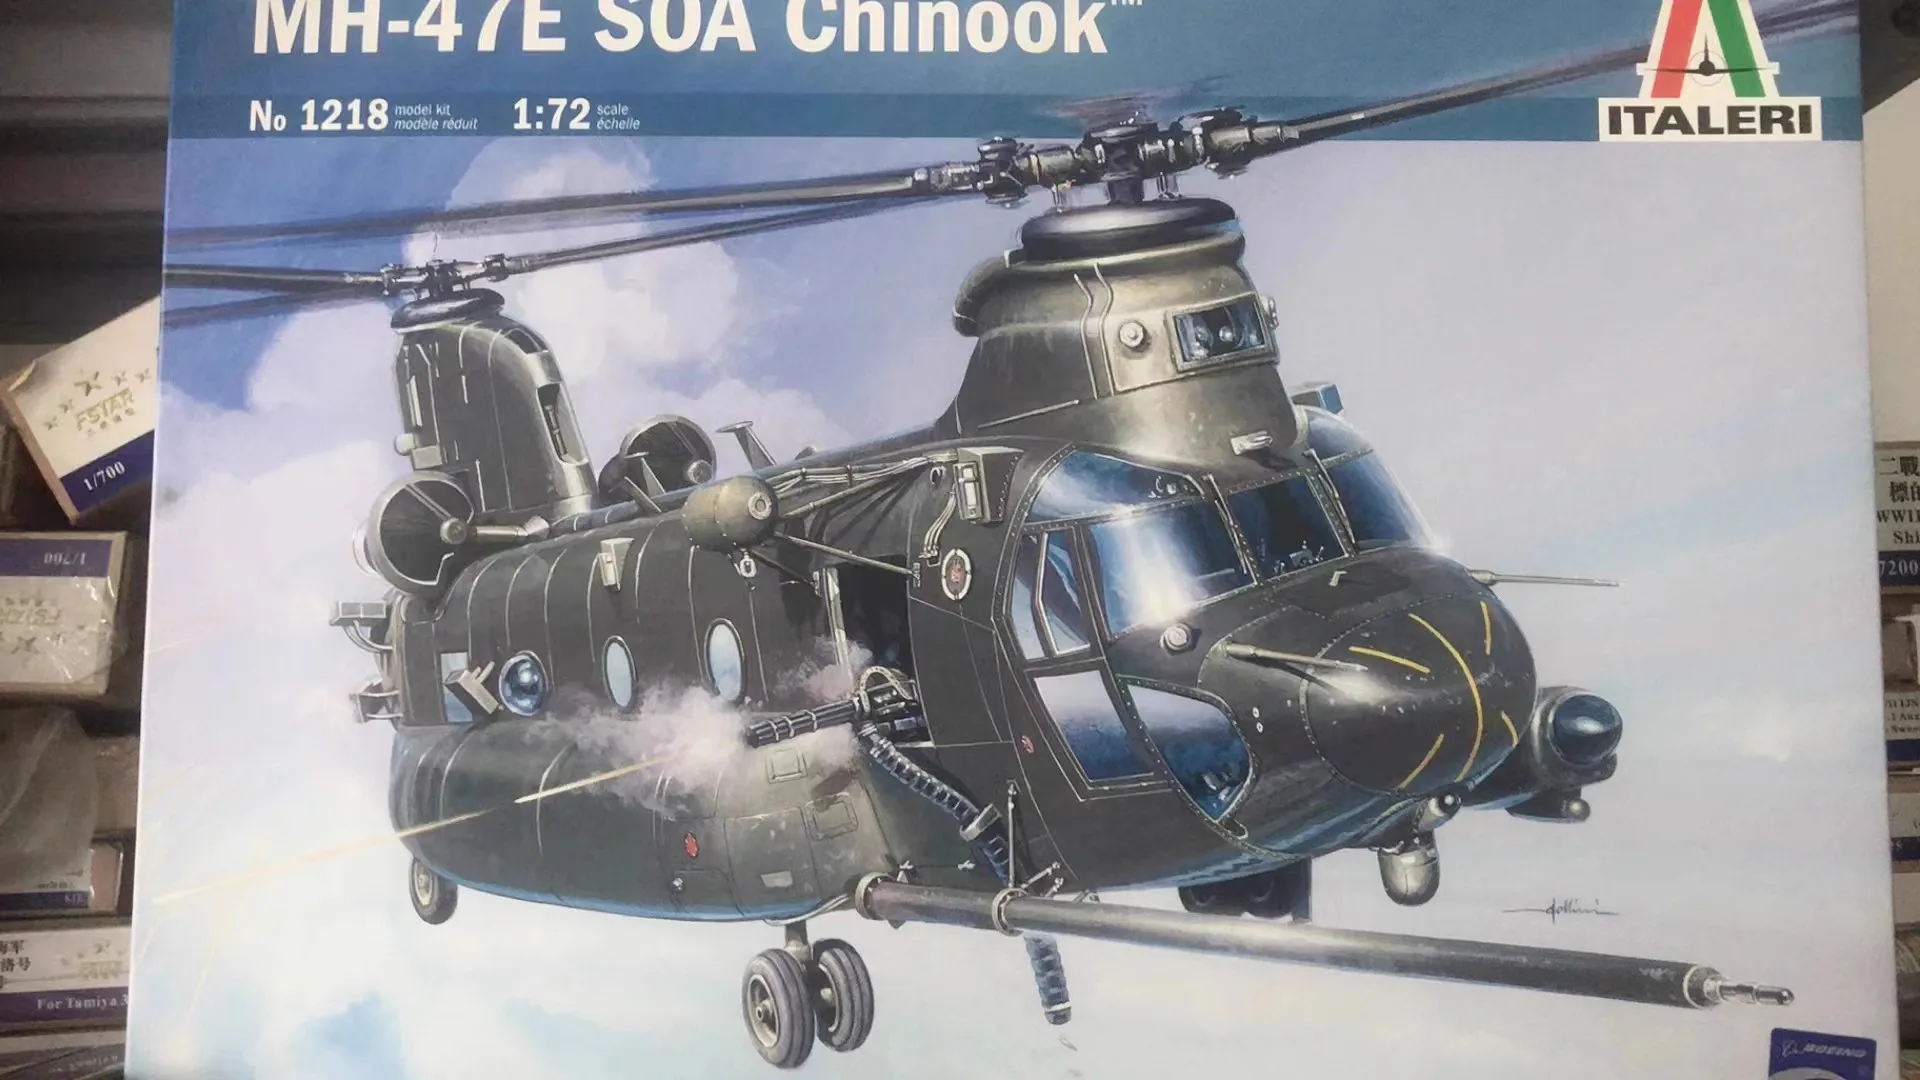 MH-47E SOA Helicóptero CHINOOK 1/72 de la Asamblea modelo de juguete - 0